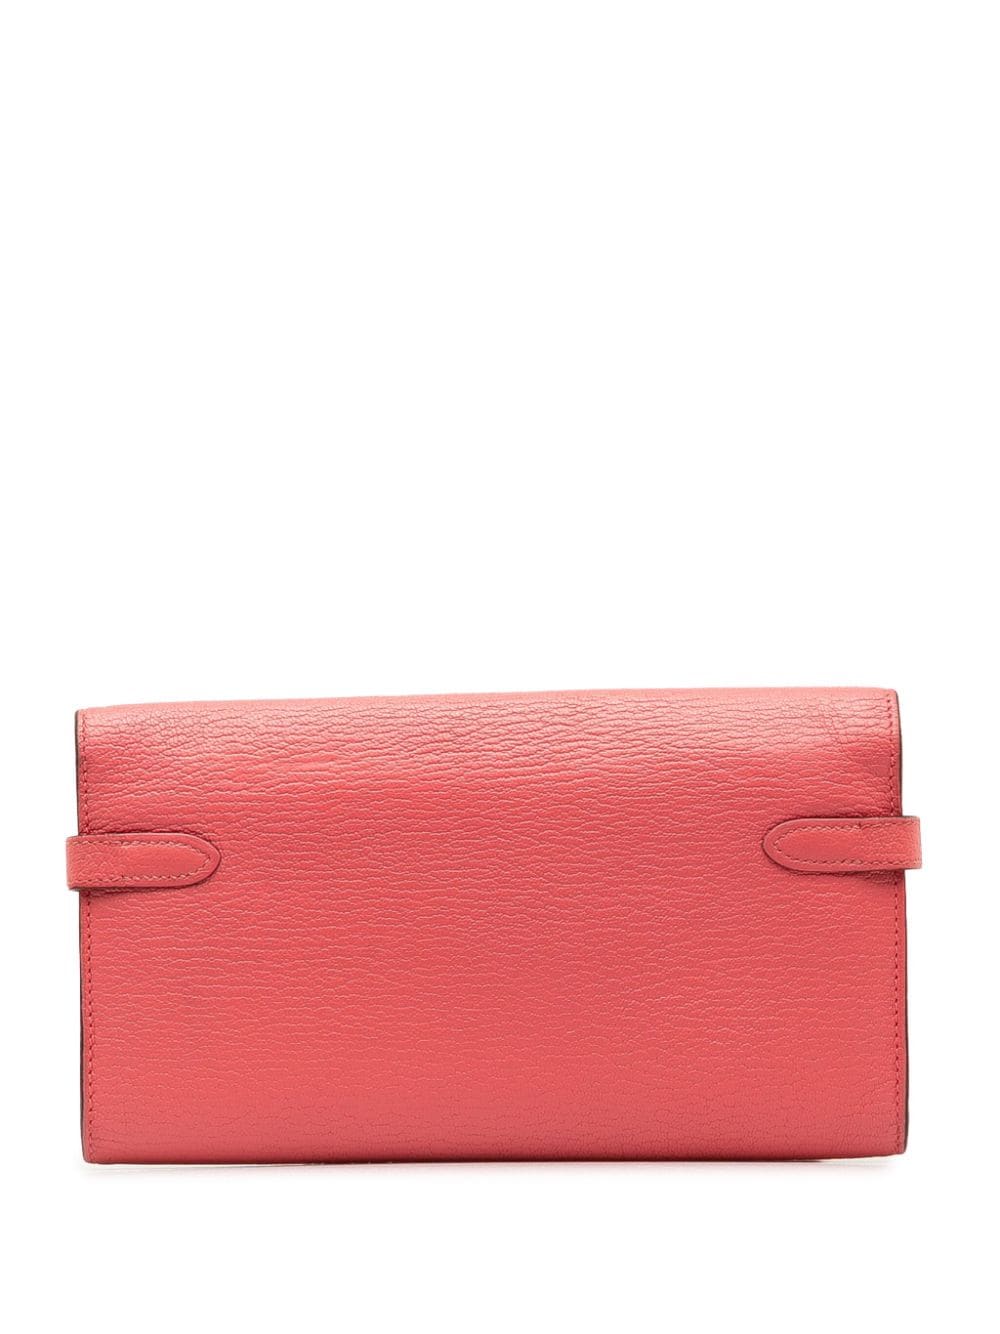 Hermès Pre-Owned 2017 Chevre Classic Kelly Wallet long wallets - Roze